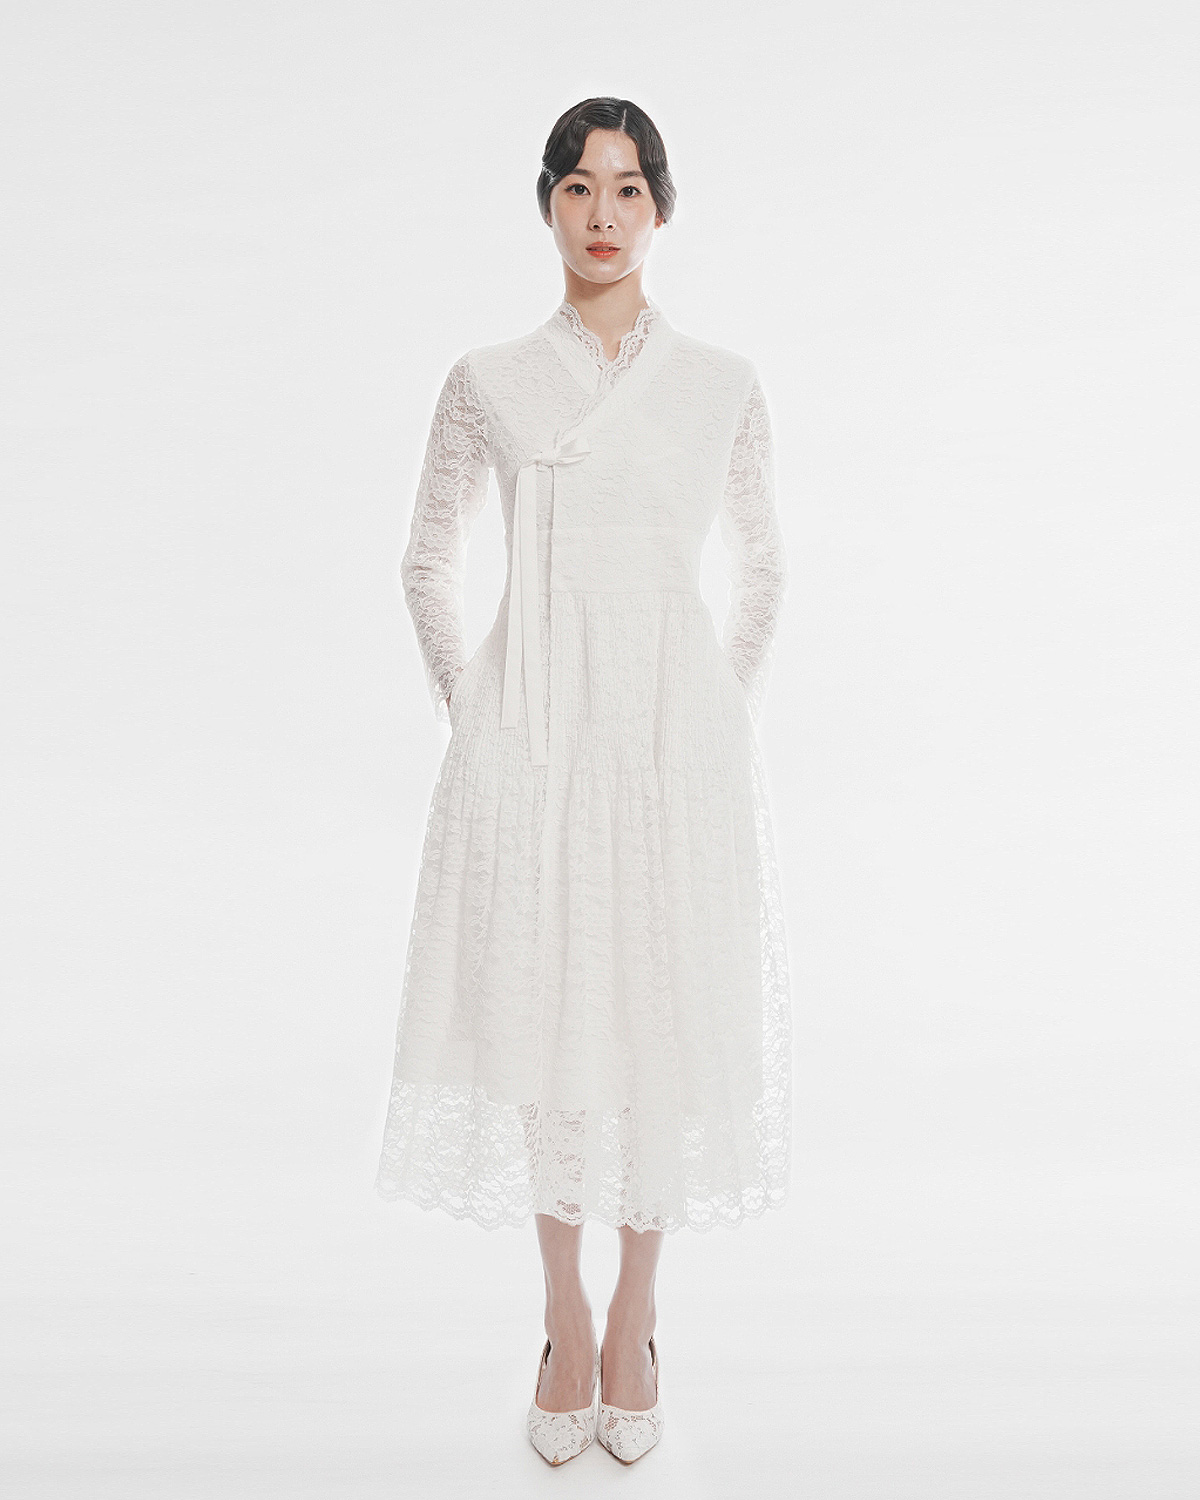 White Lace Chulic Dress